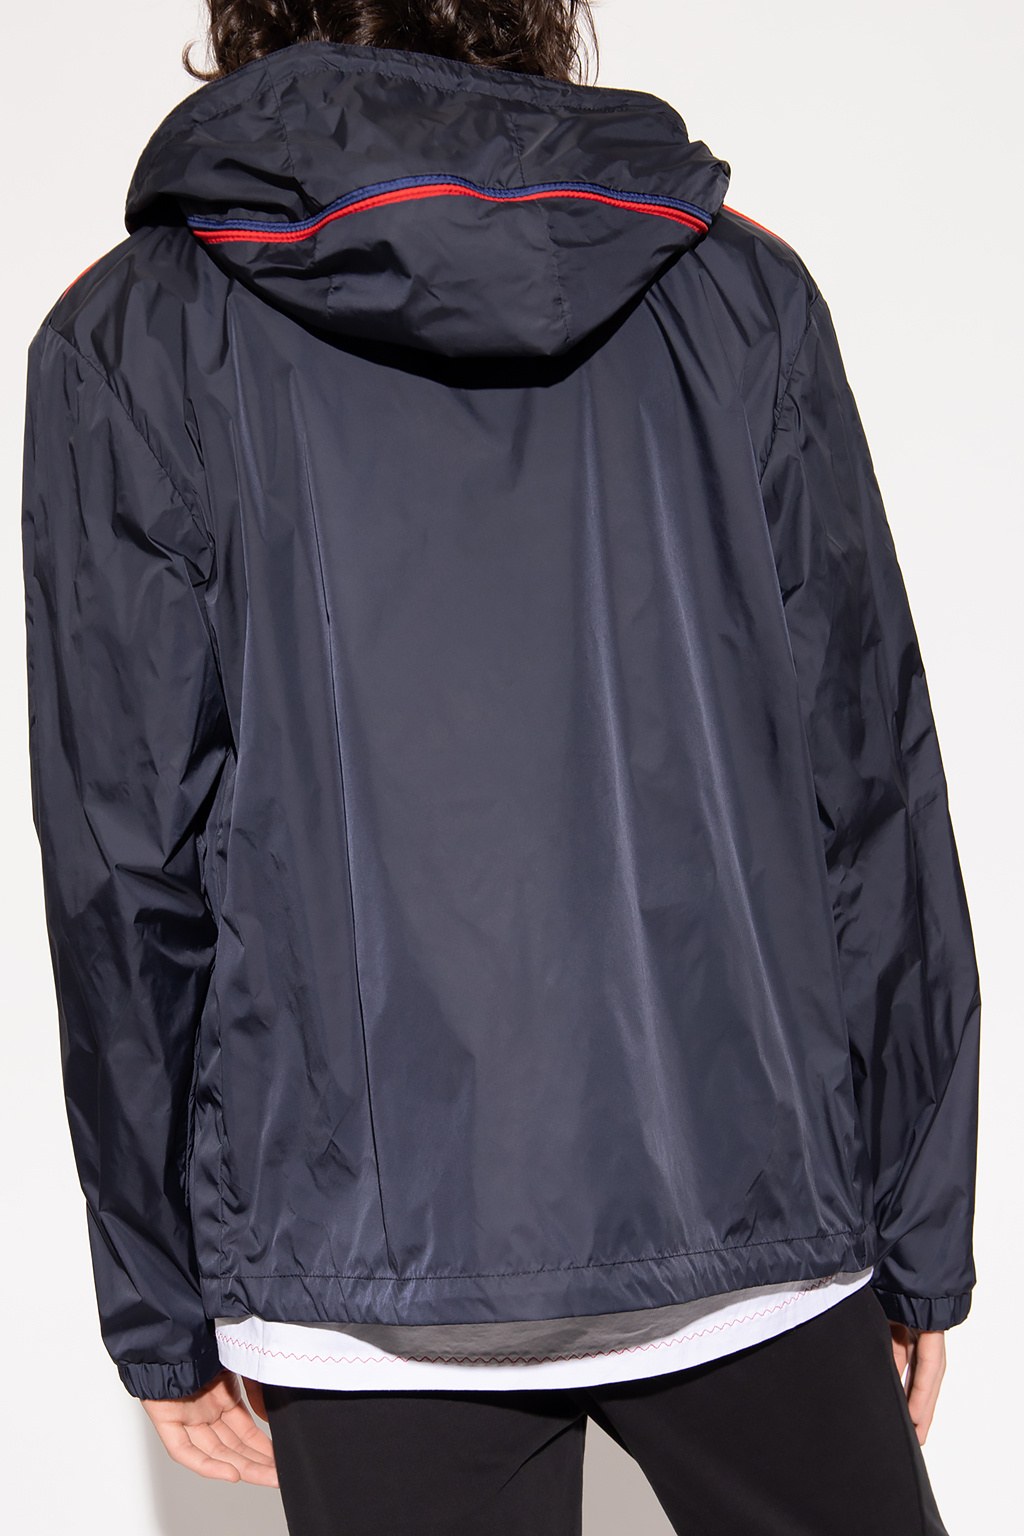 Moncler ‘Hattab’ rain taped jacket